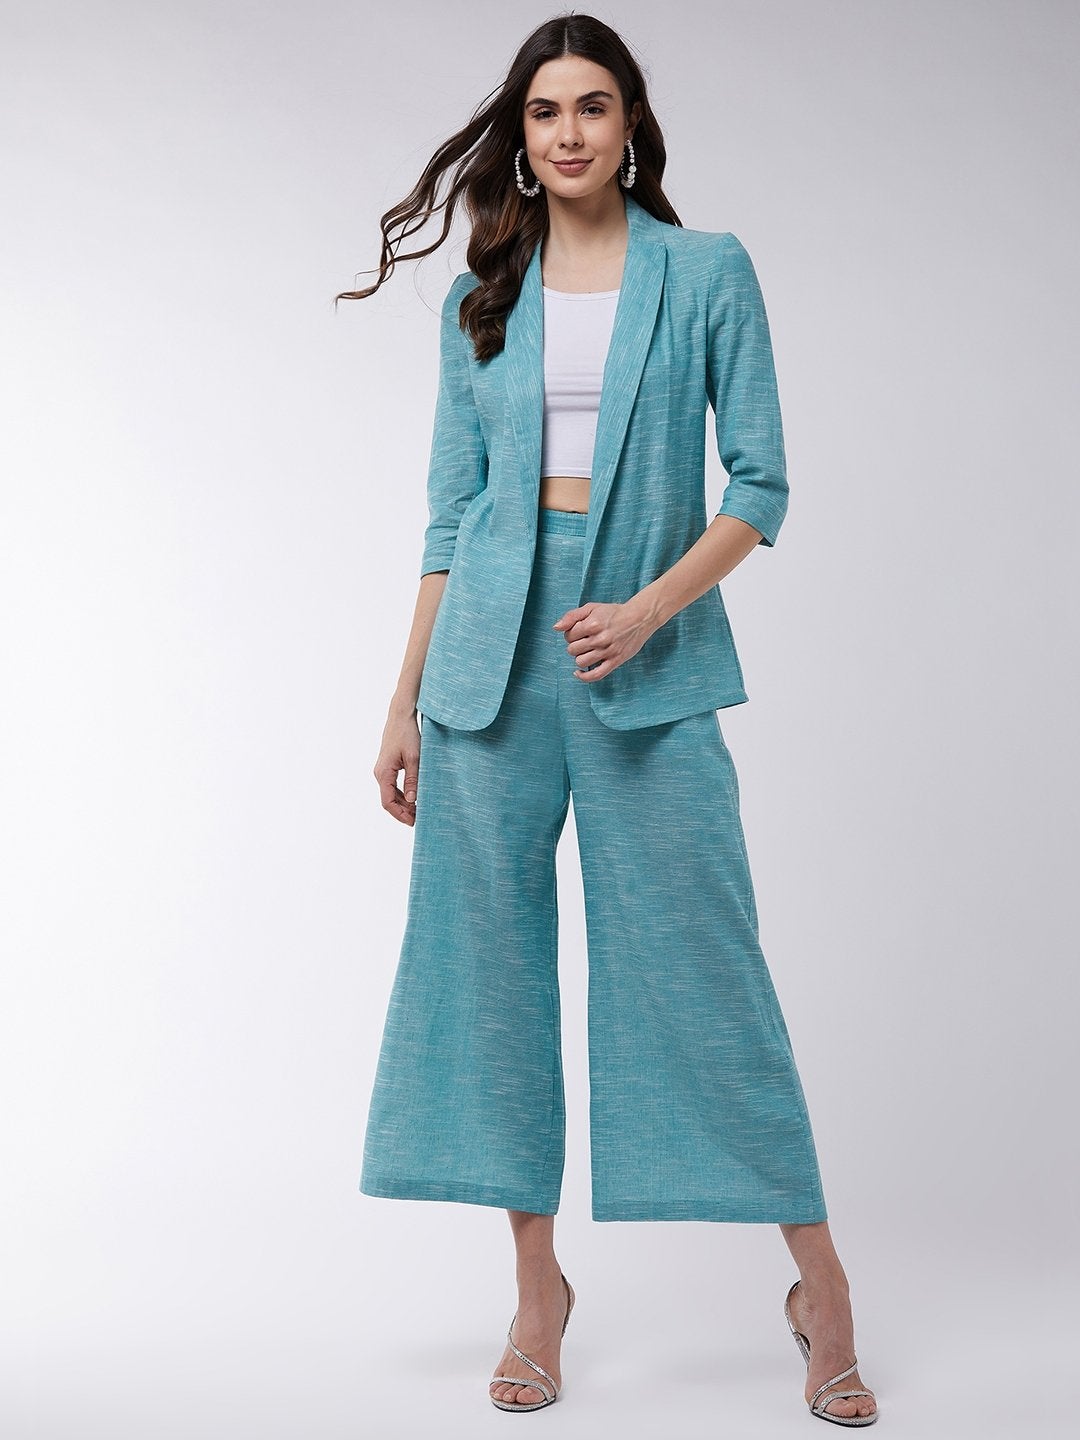 Women's Chambray Long Blazer And Pant Set - Pannkh